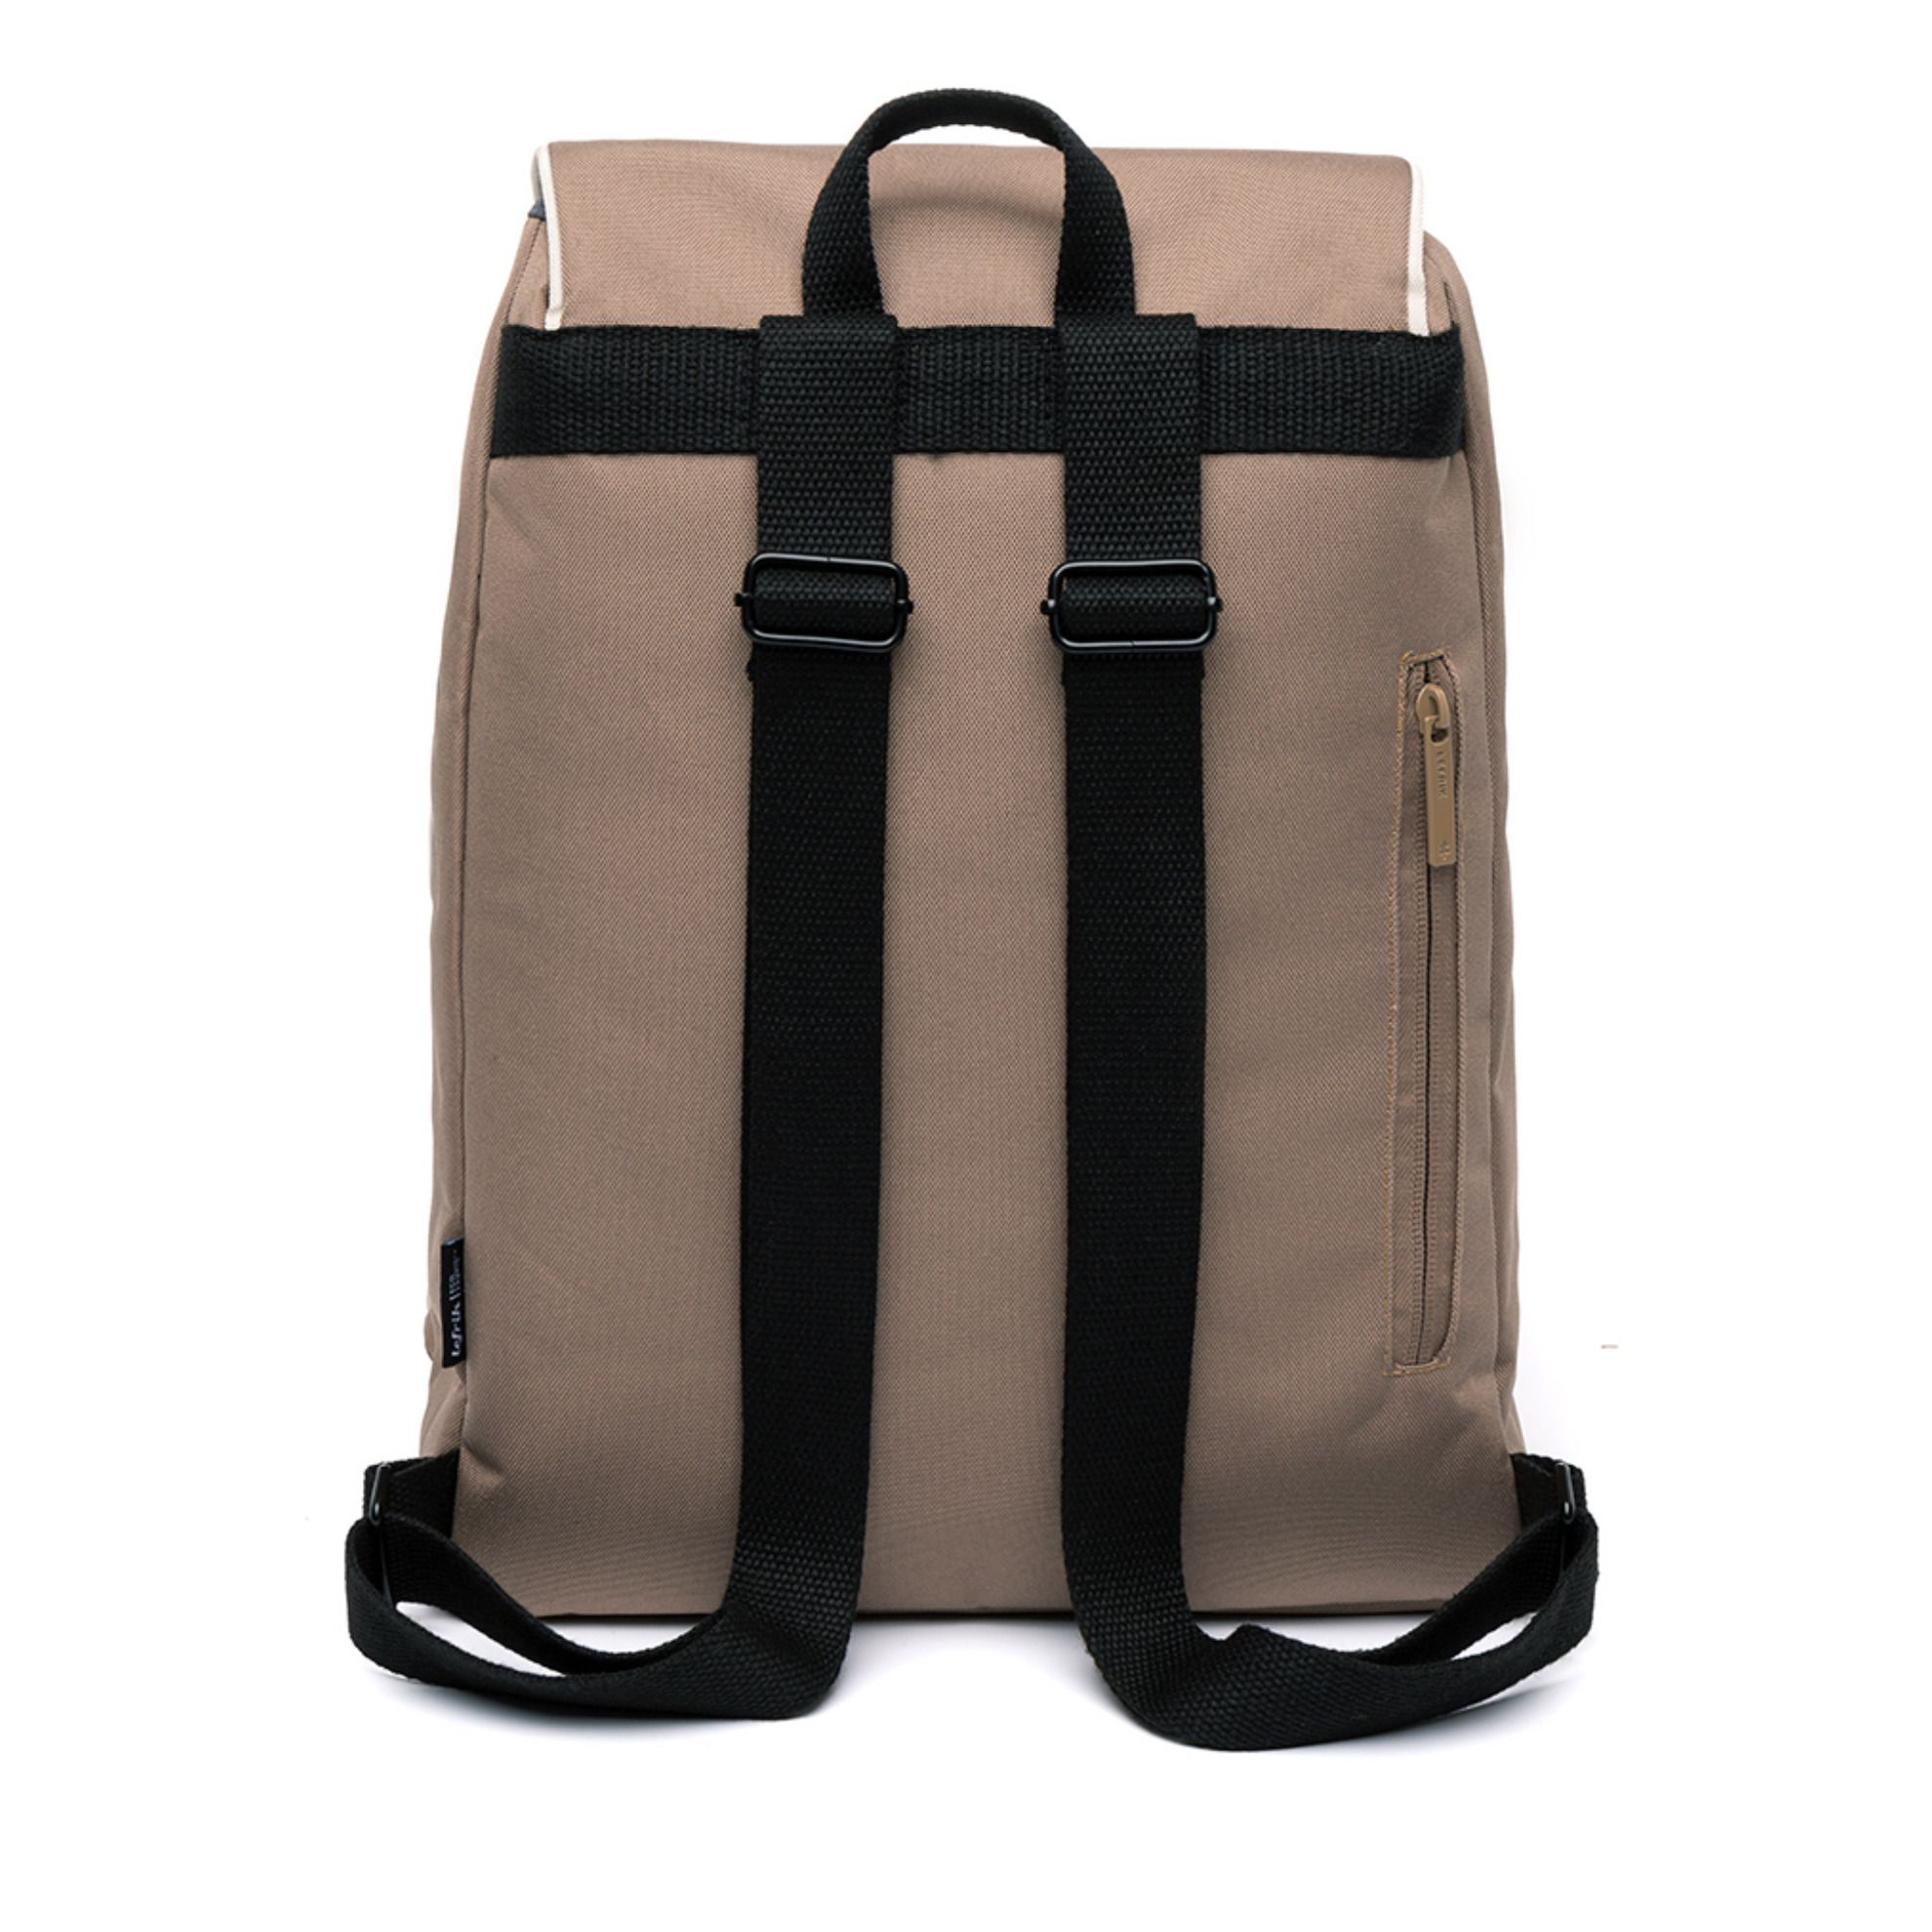 Knapsack Backpack Sand- Product image n°4